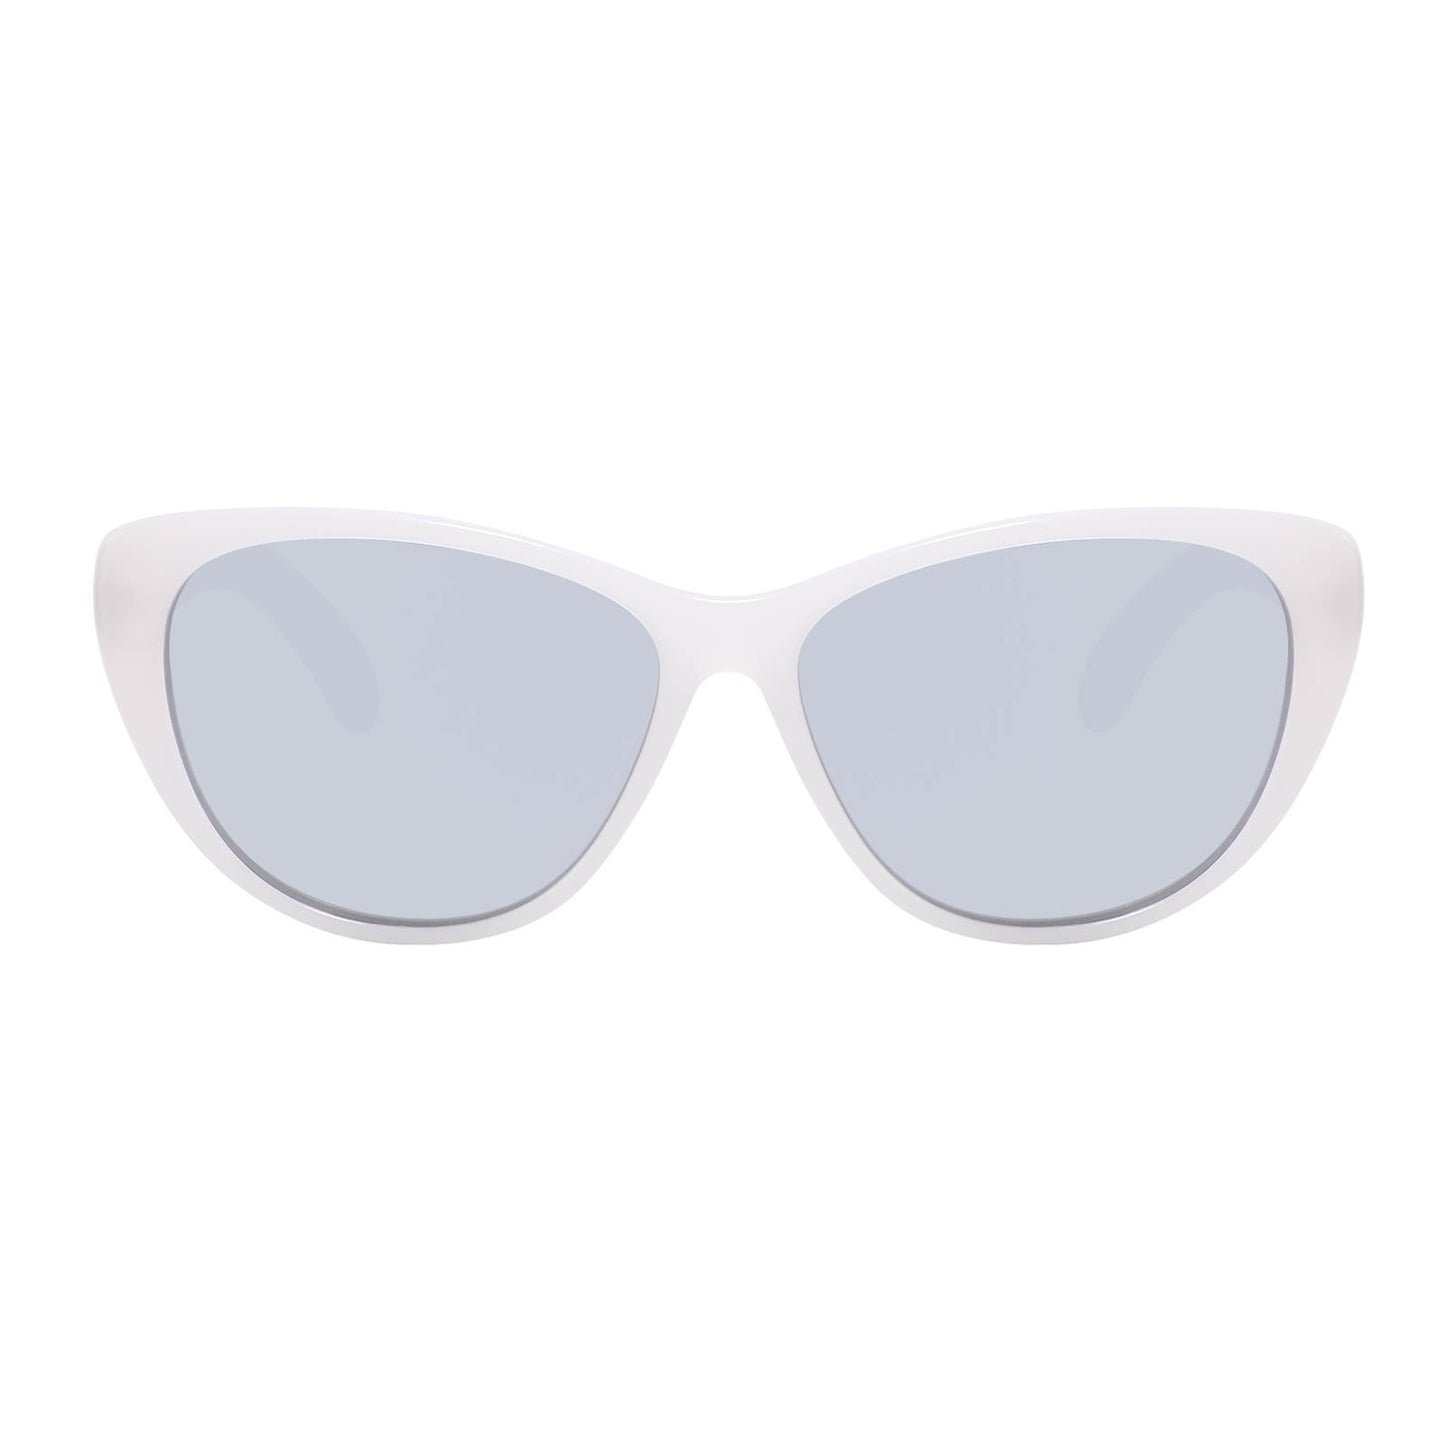 White Bamboo Sunglasses